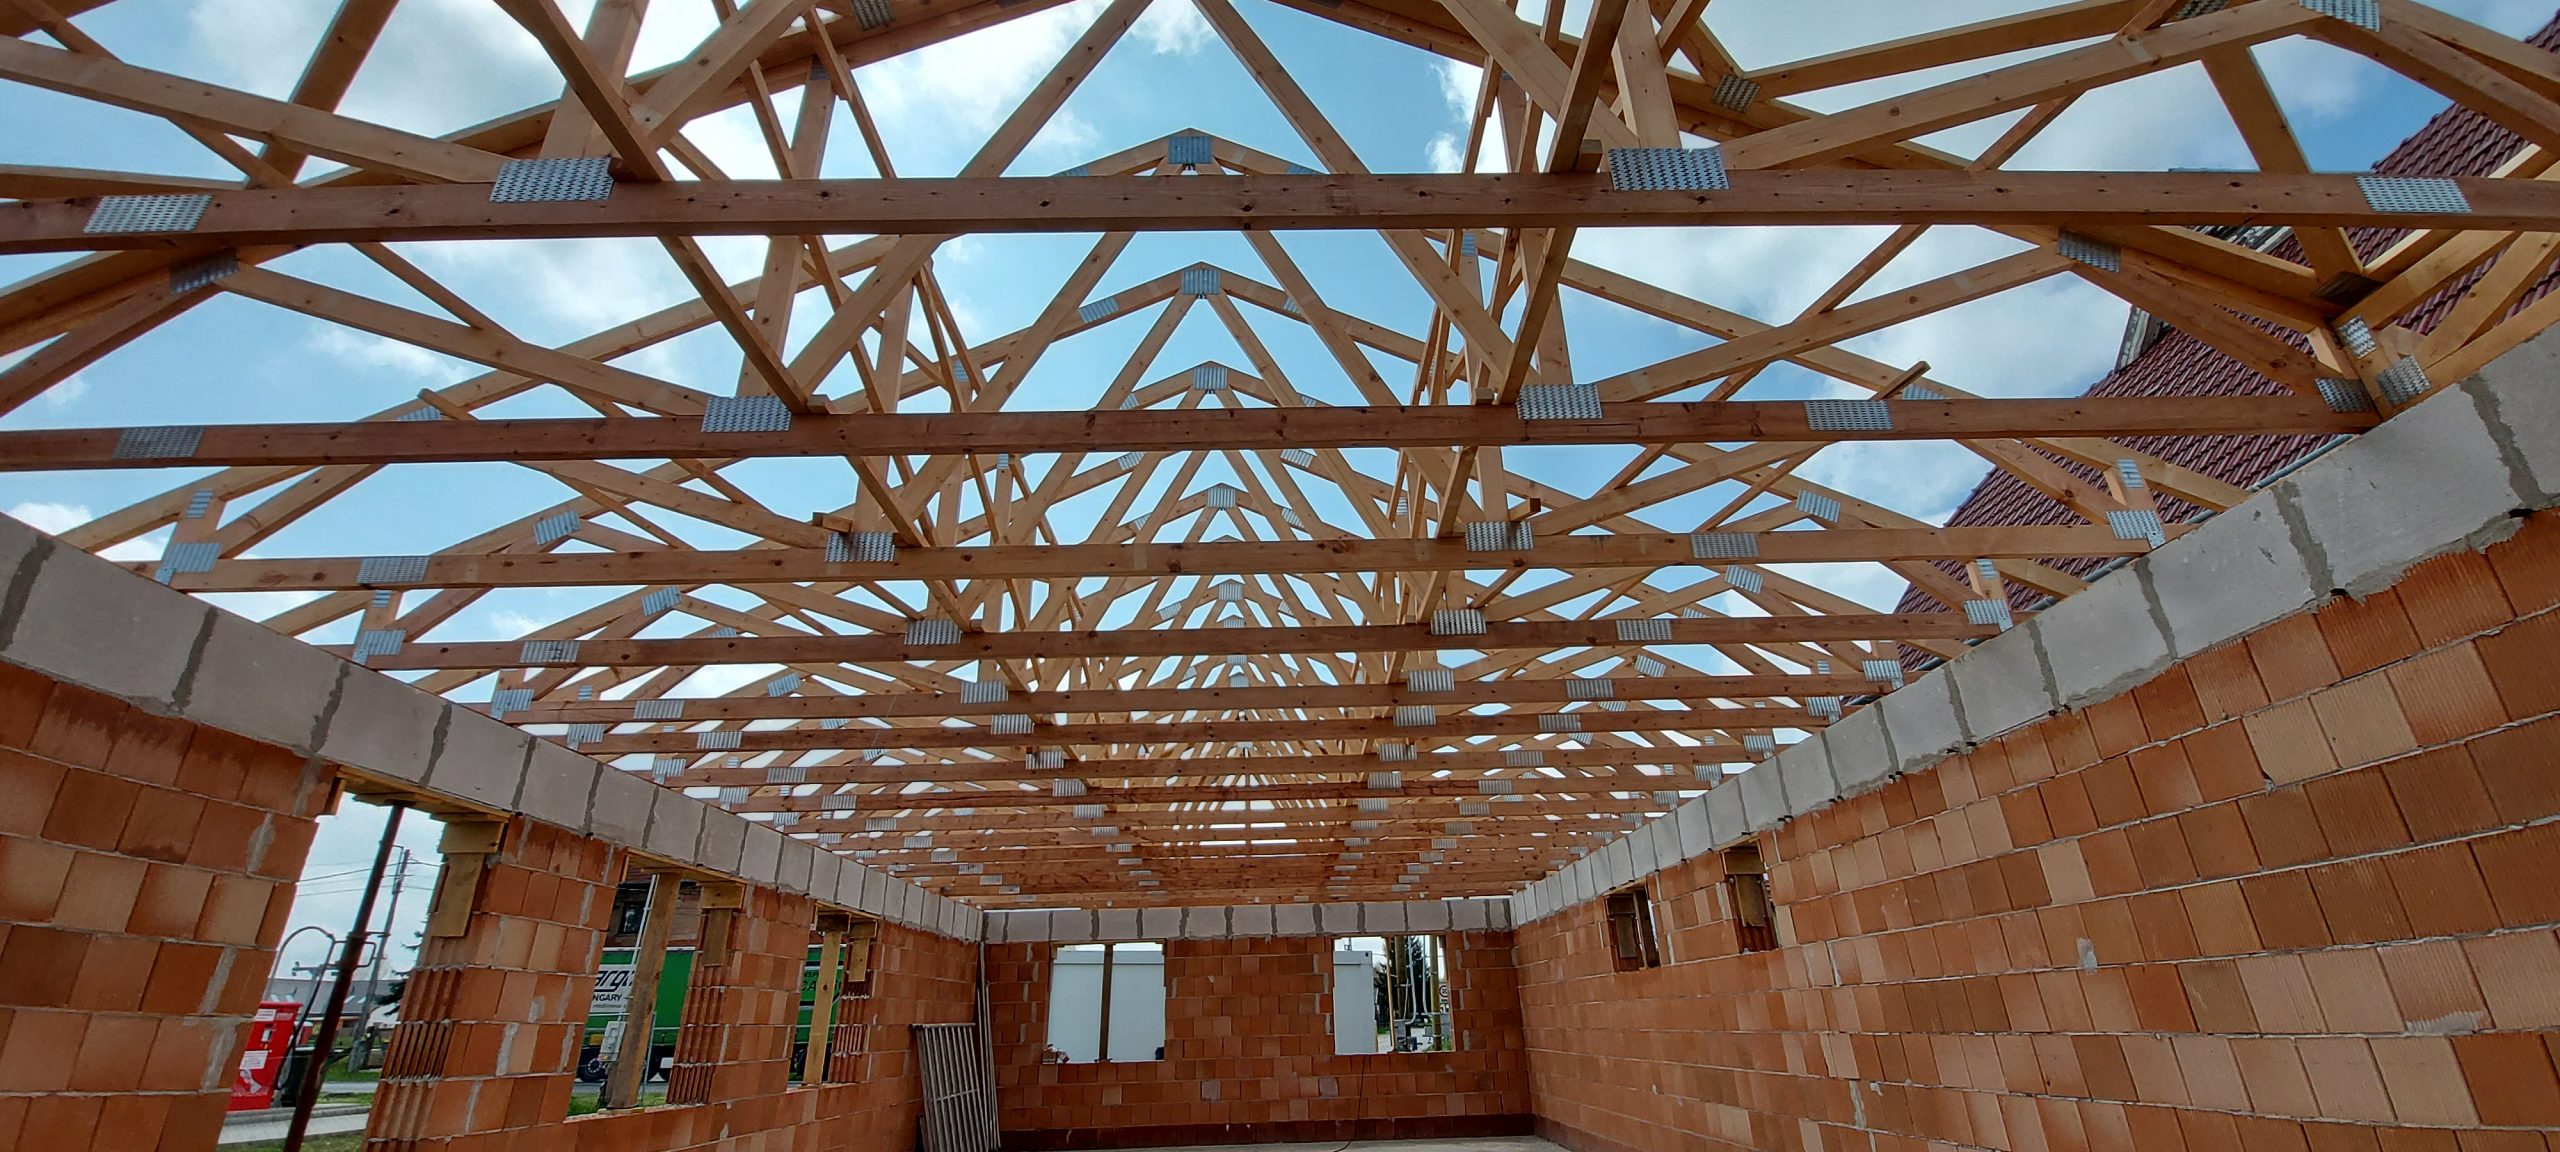 Szeglemezes tetőszerkezetünkkel biztosítottuk otthona tetőjének hosszú távú tartósságát és megbízhatóságát.